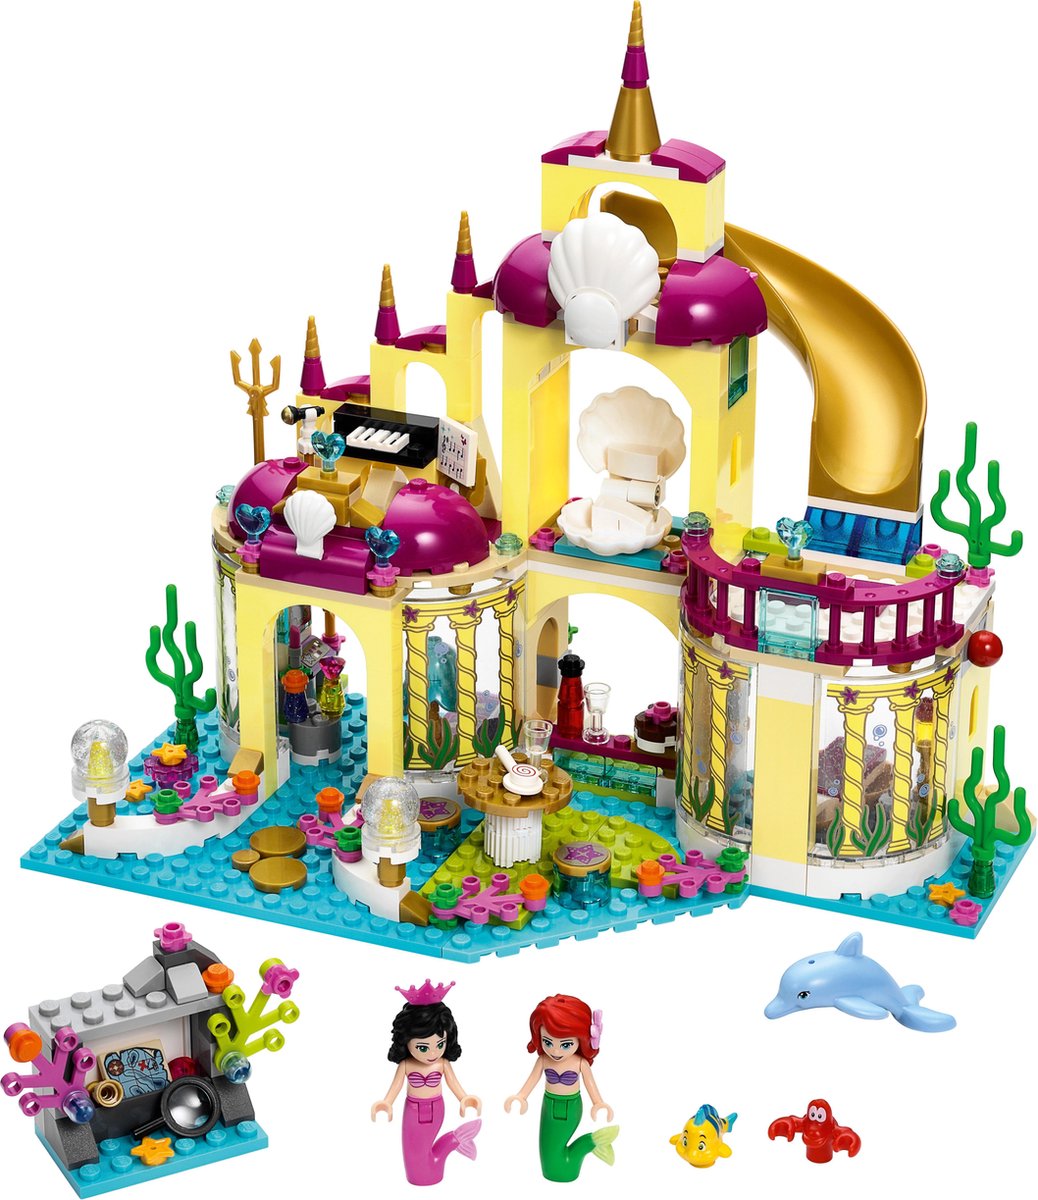 LEGO Disney Princess Ariel's Onderwaterpaleis - 41063 | bol.com